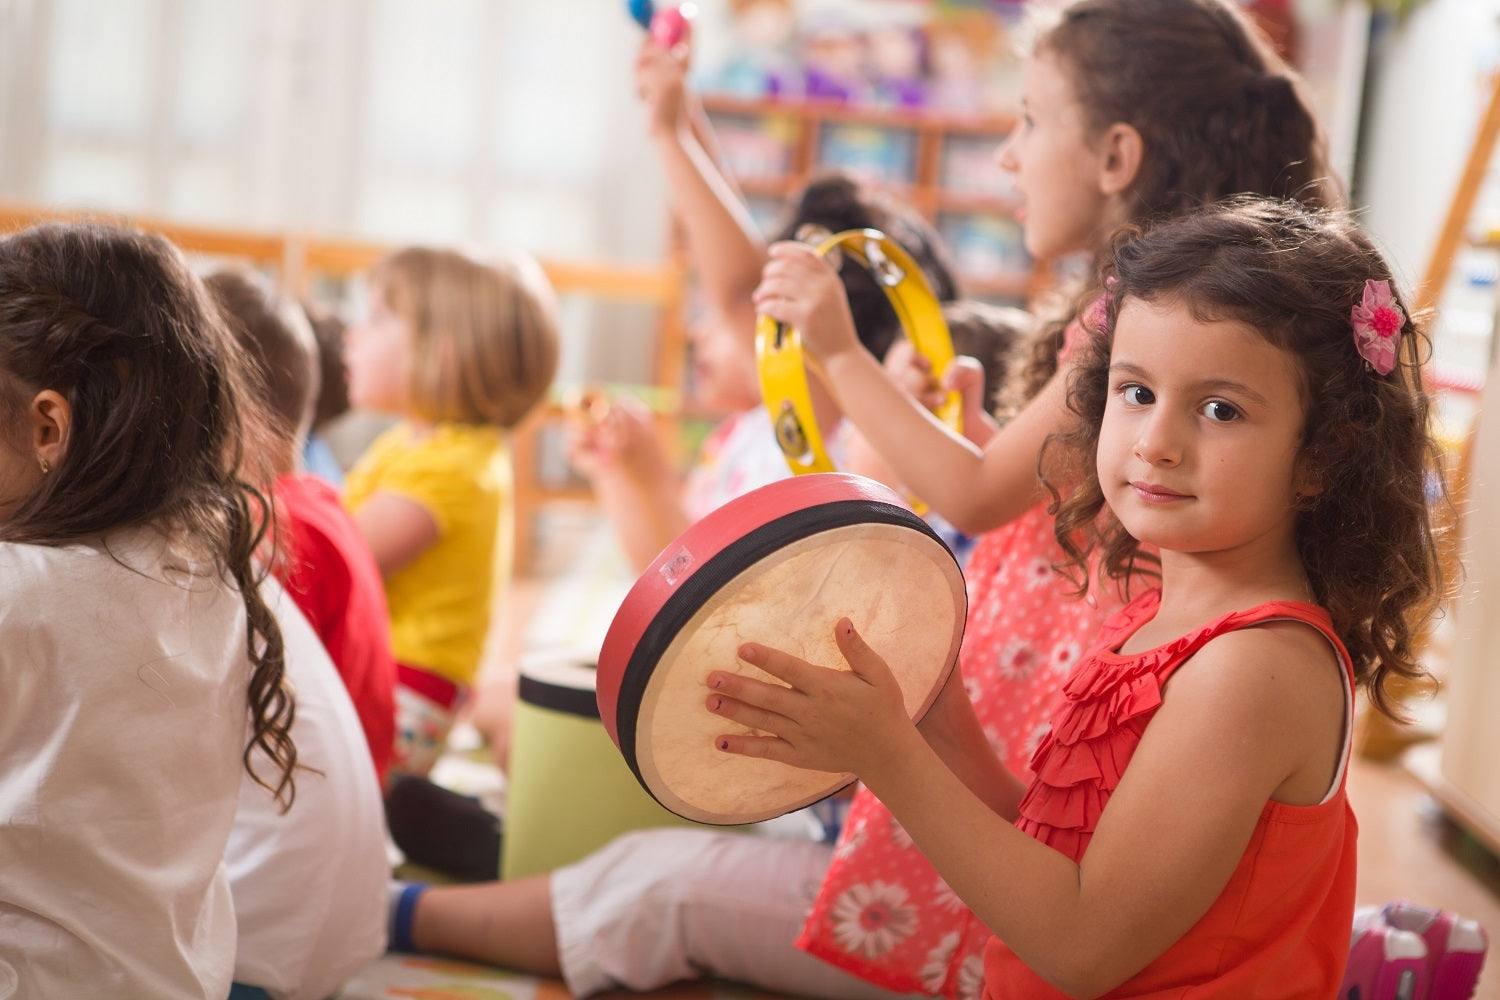 Instrumentos musicales para niños, ¿Cuáles son los más usados?